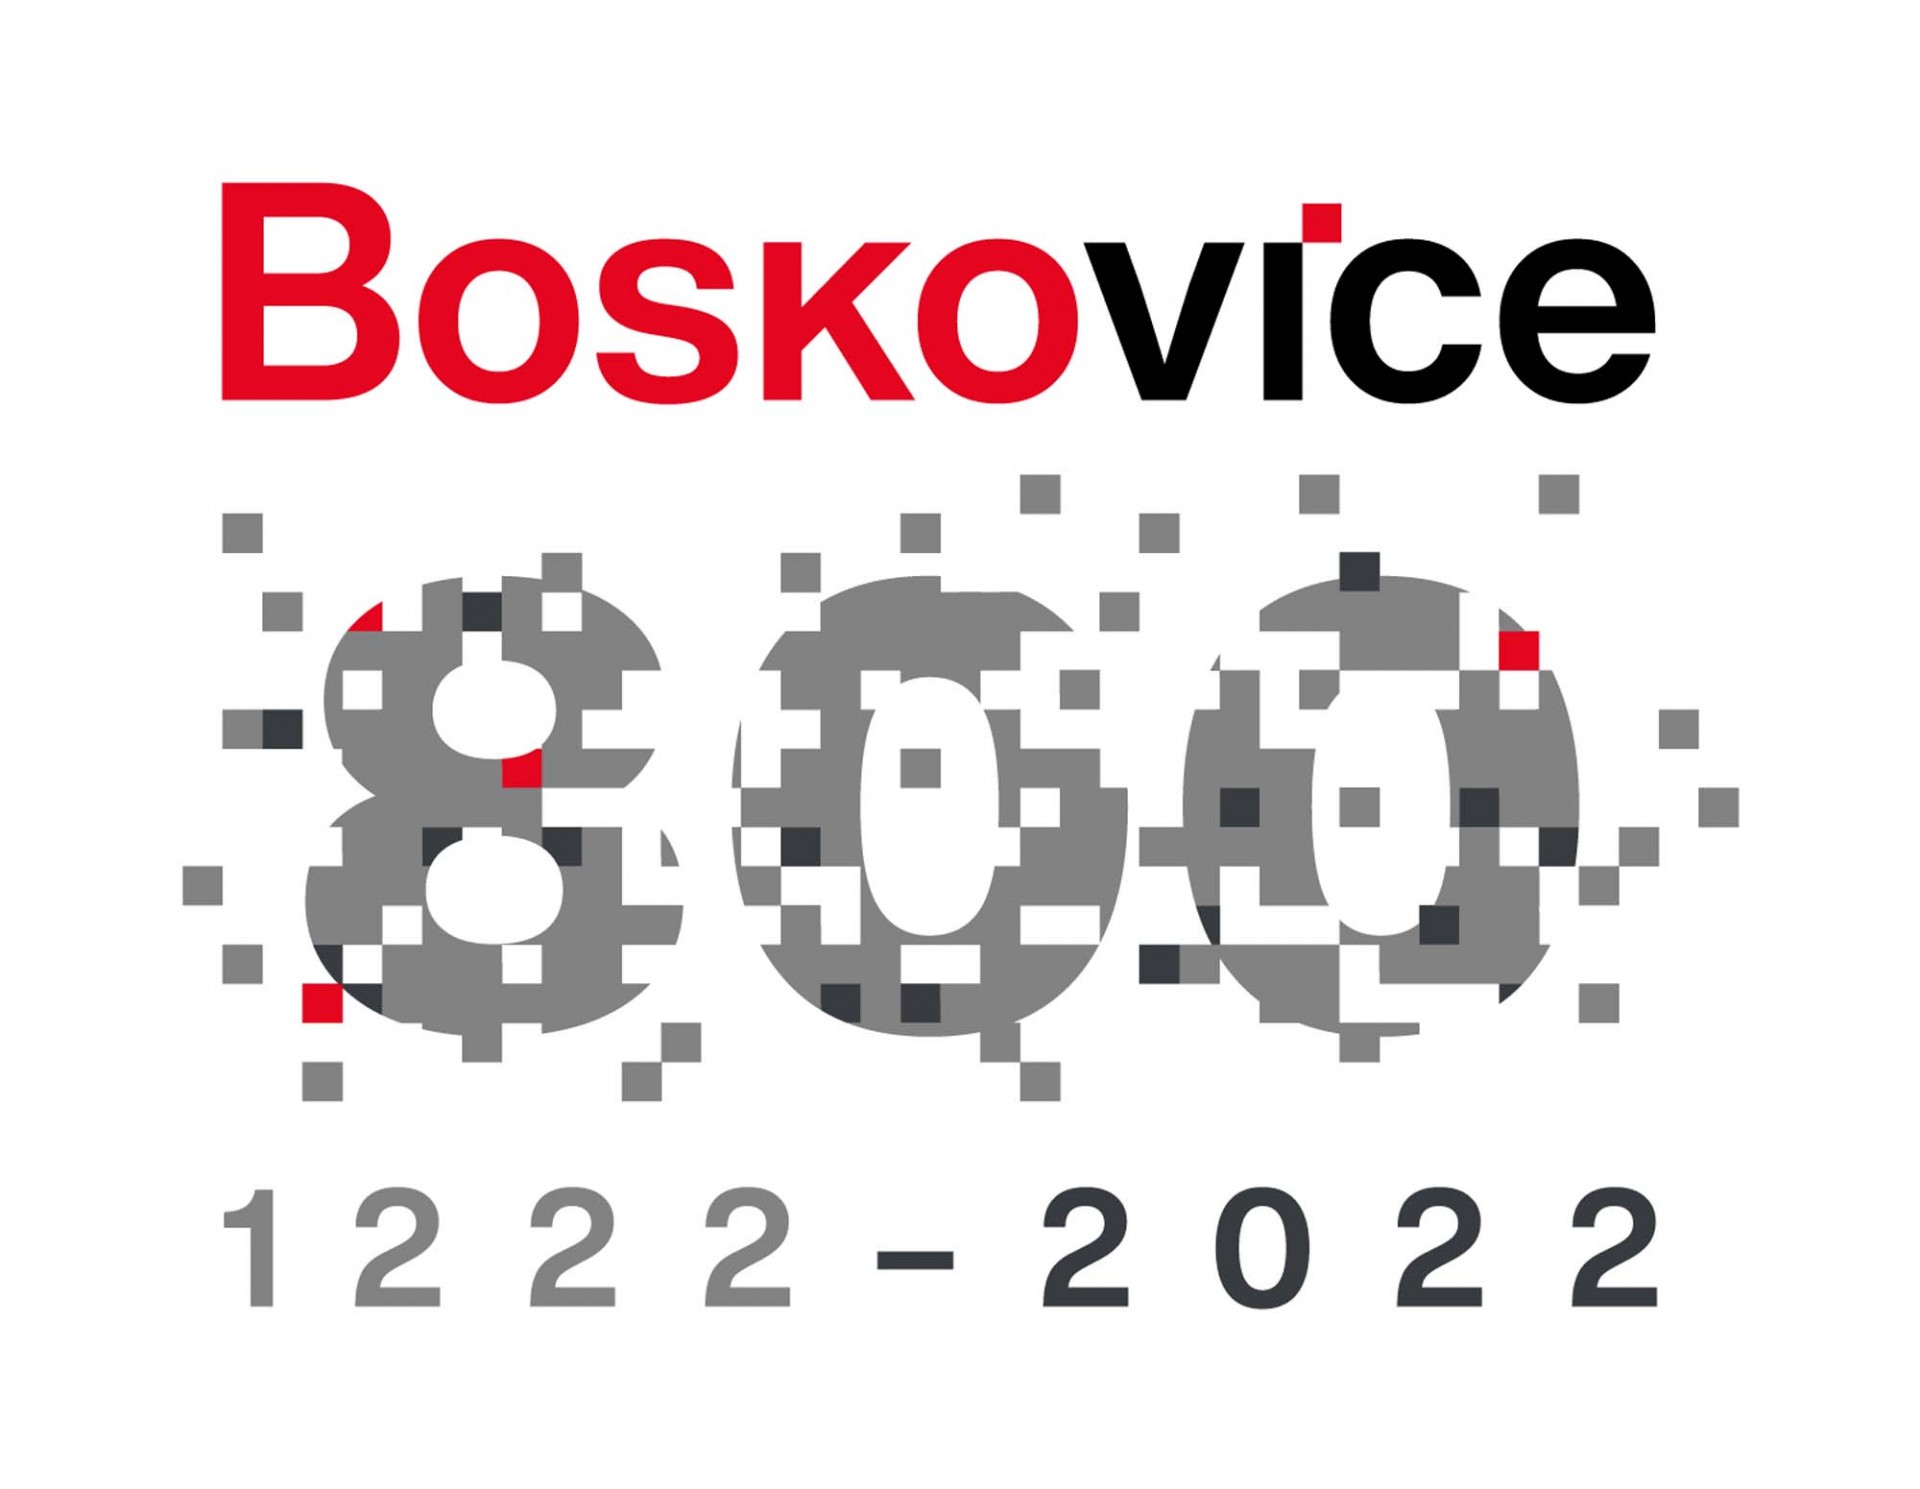 Publikace k oslavě 800 let města Boskovice